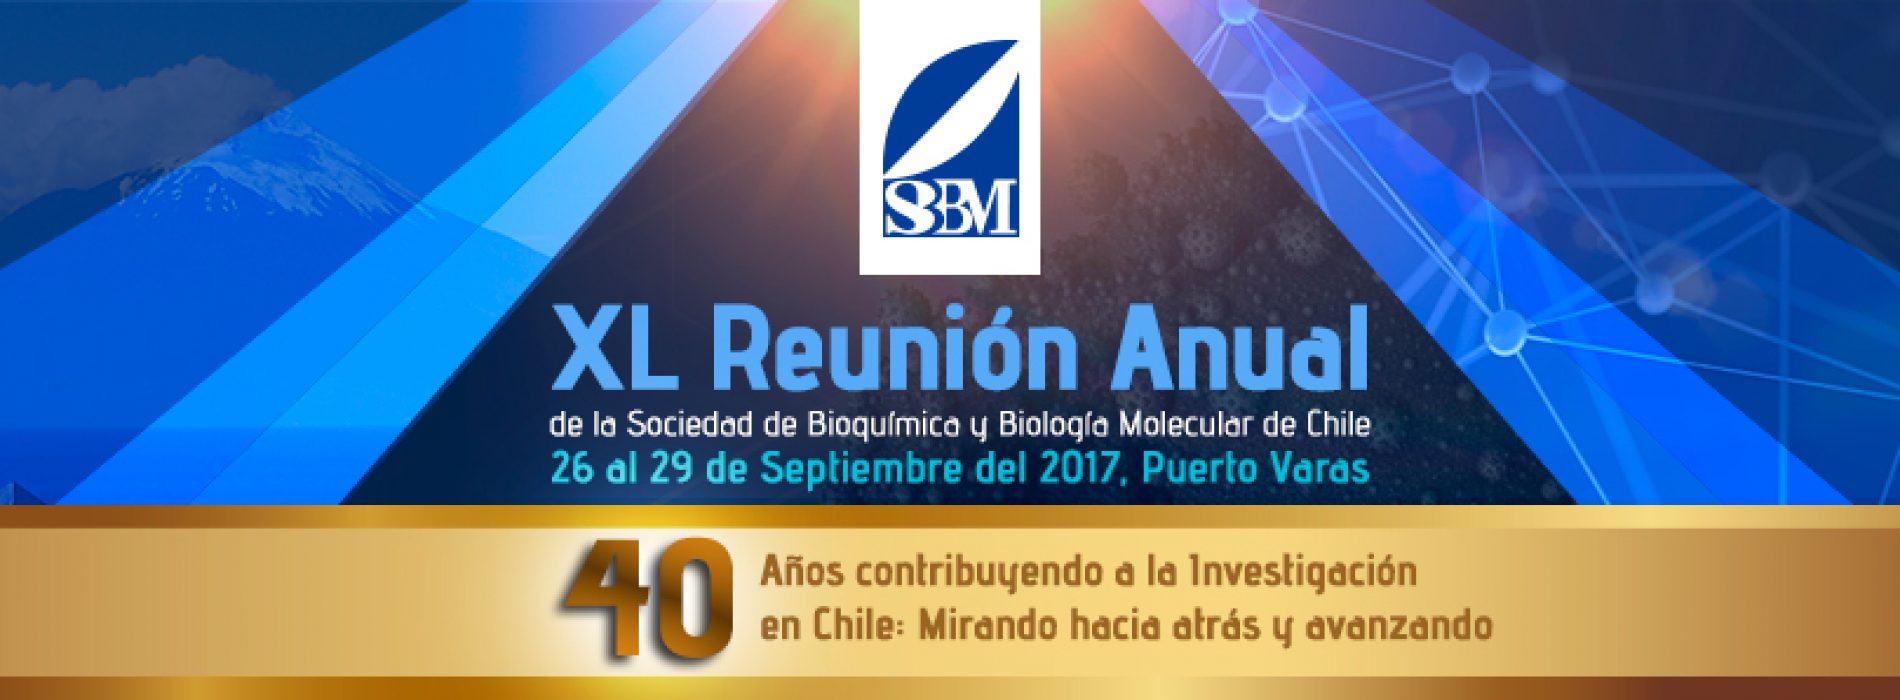 Video resumen de XL Reunión Anual de Sociedad de Bioquímica y Biología Molecular de Chile